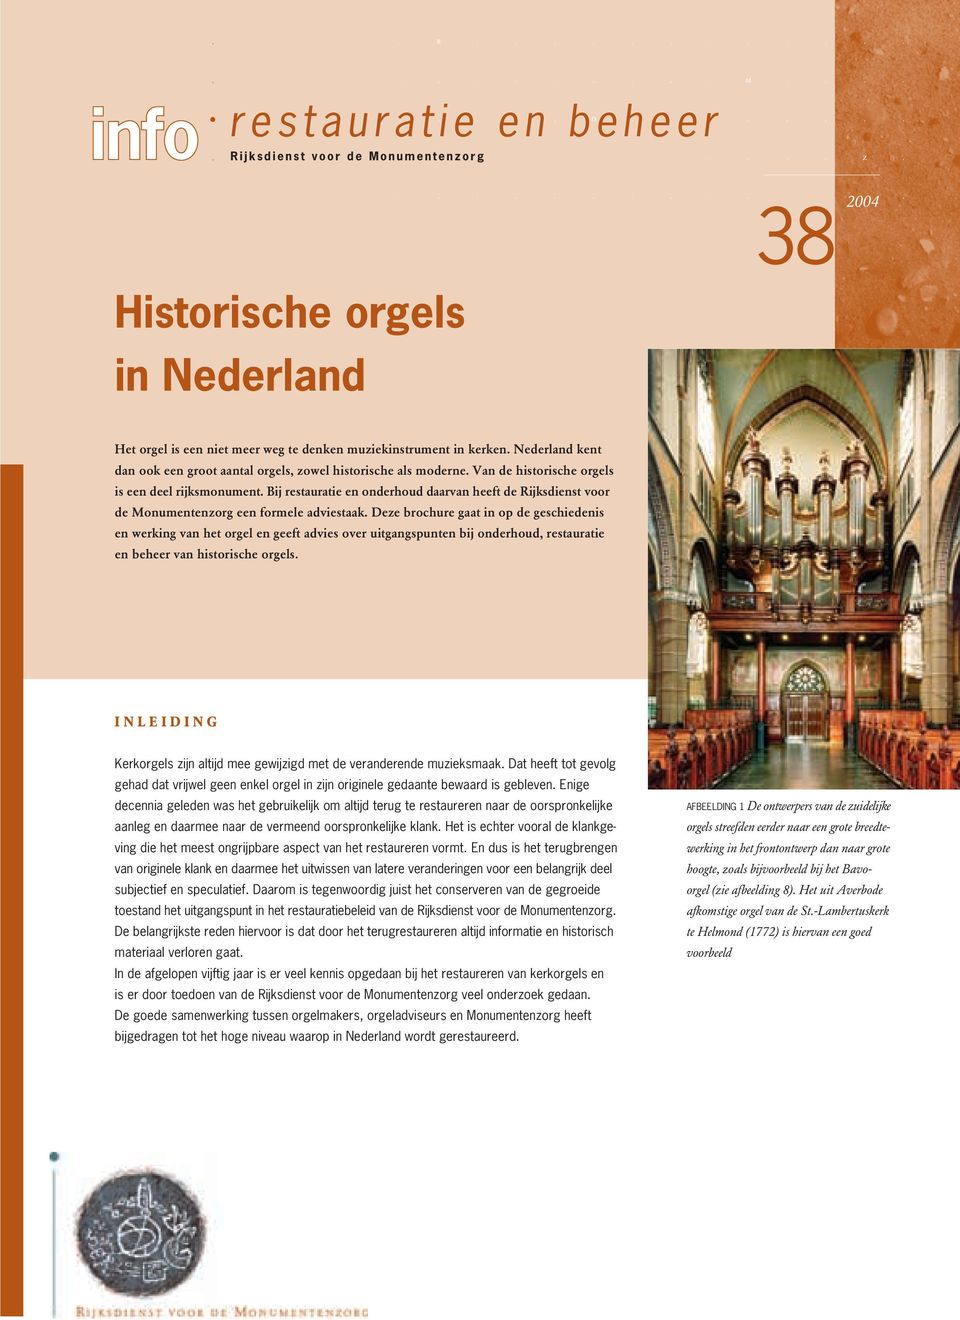 Van de historische orgels is een deel rijksmonument. Bij restauratie en onderhoud daarvan heeft de Rijksdienst voor de Monumentenzorg een formele adviestaak.